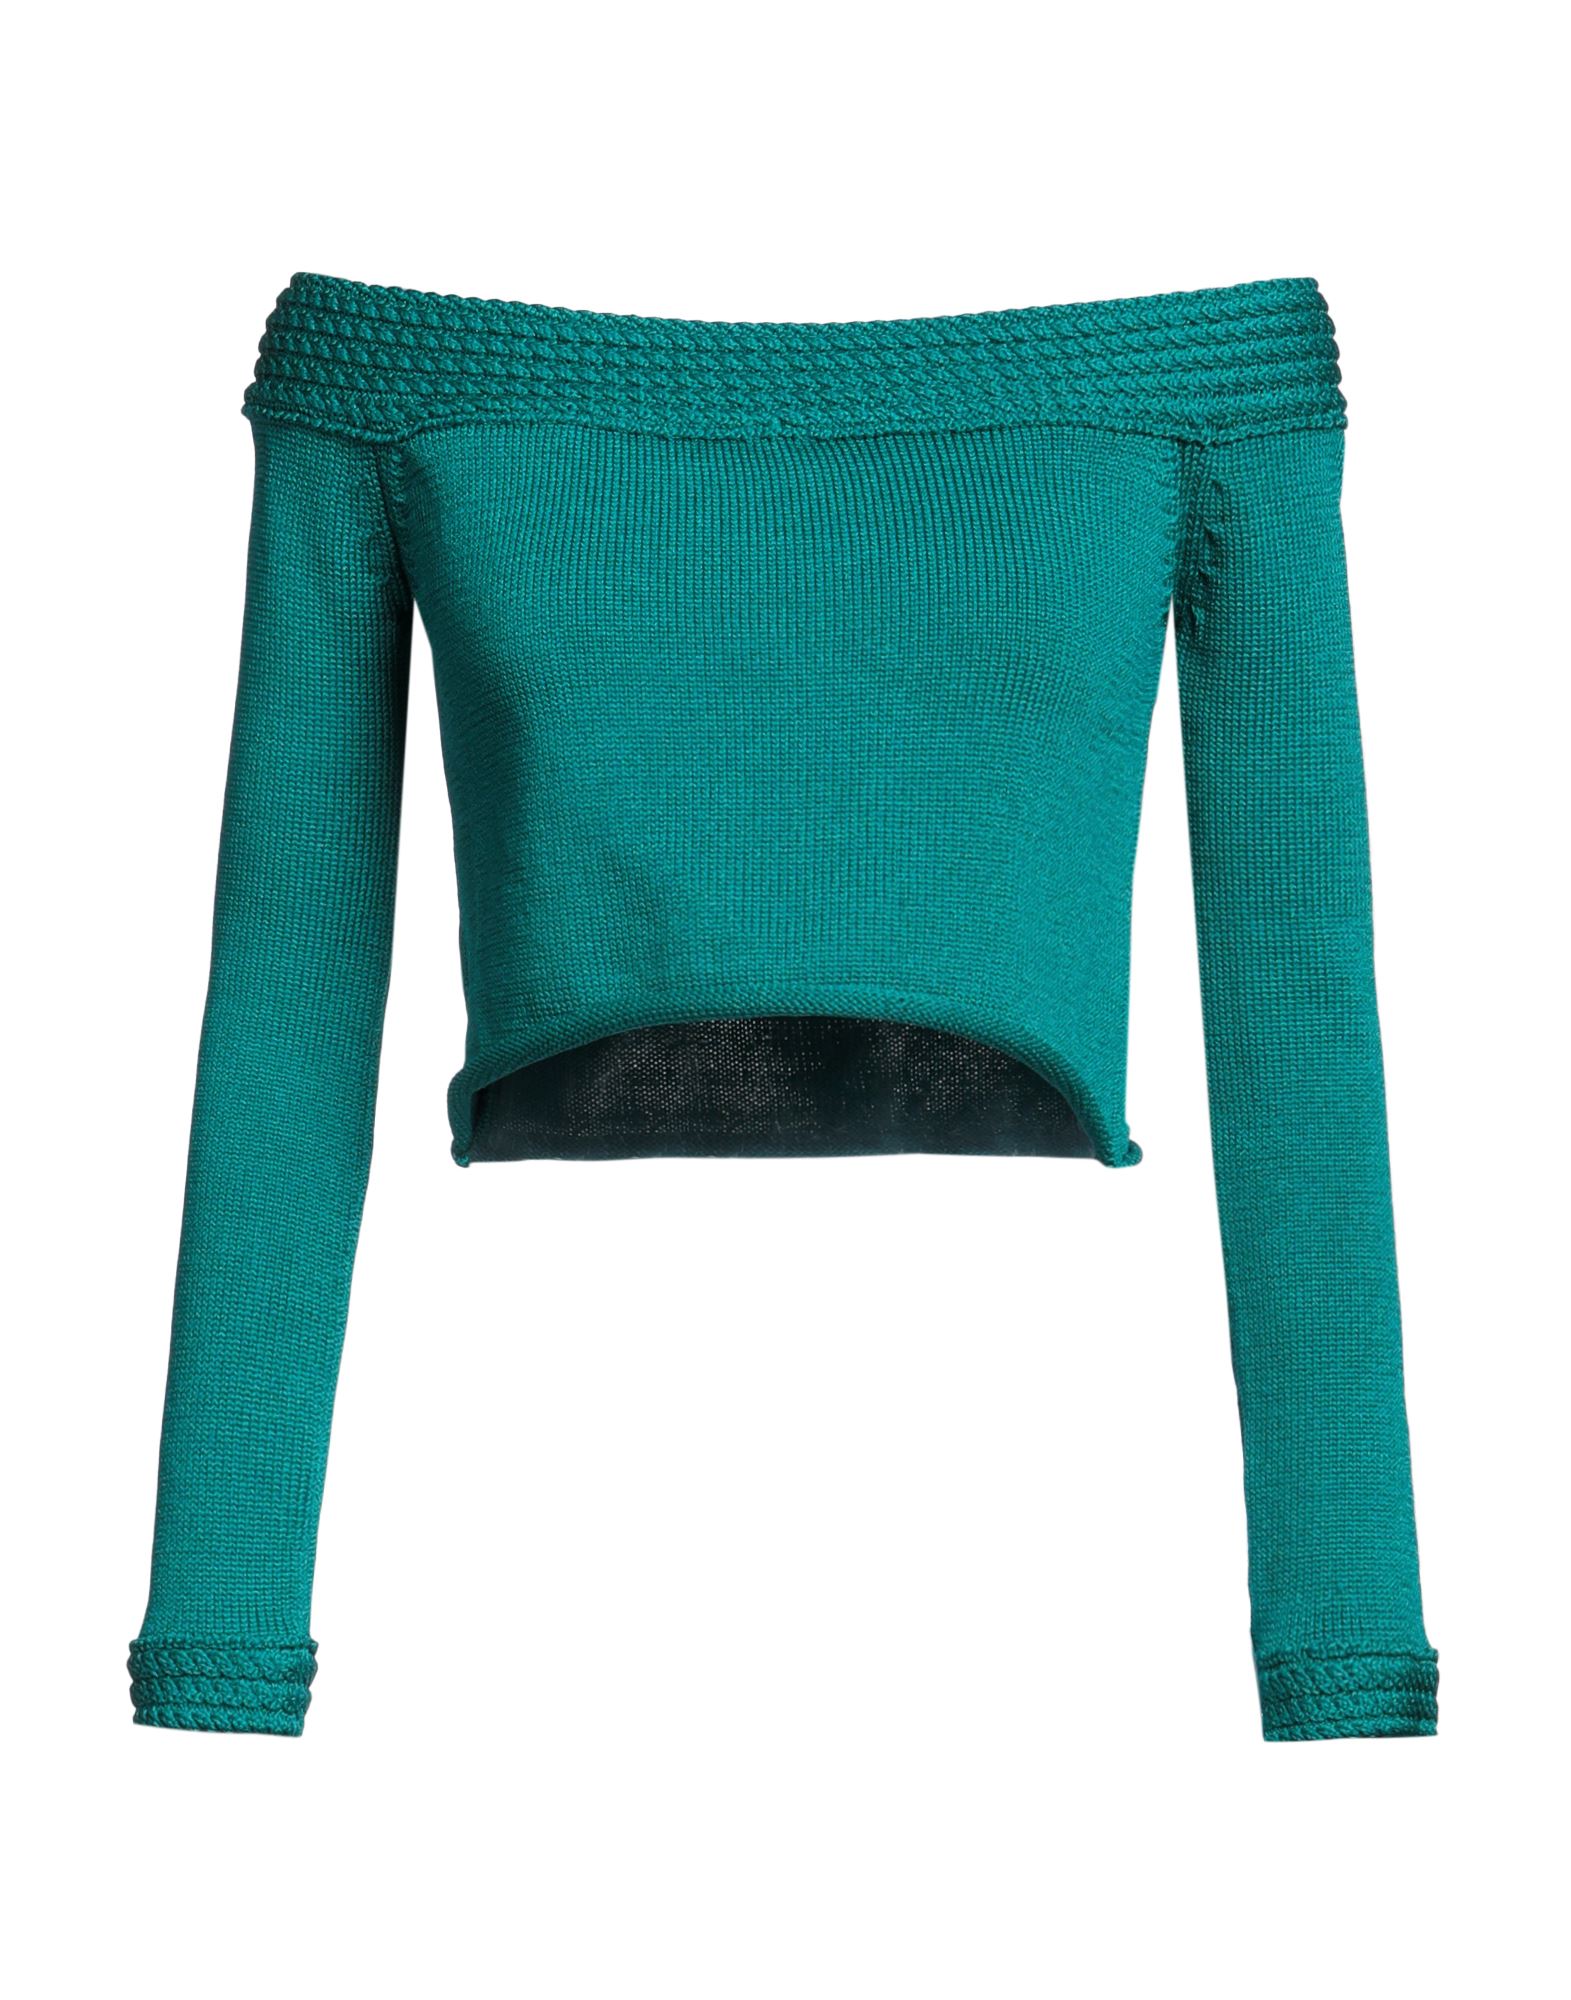 Antonella Rizza Sweaters In Green